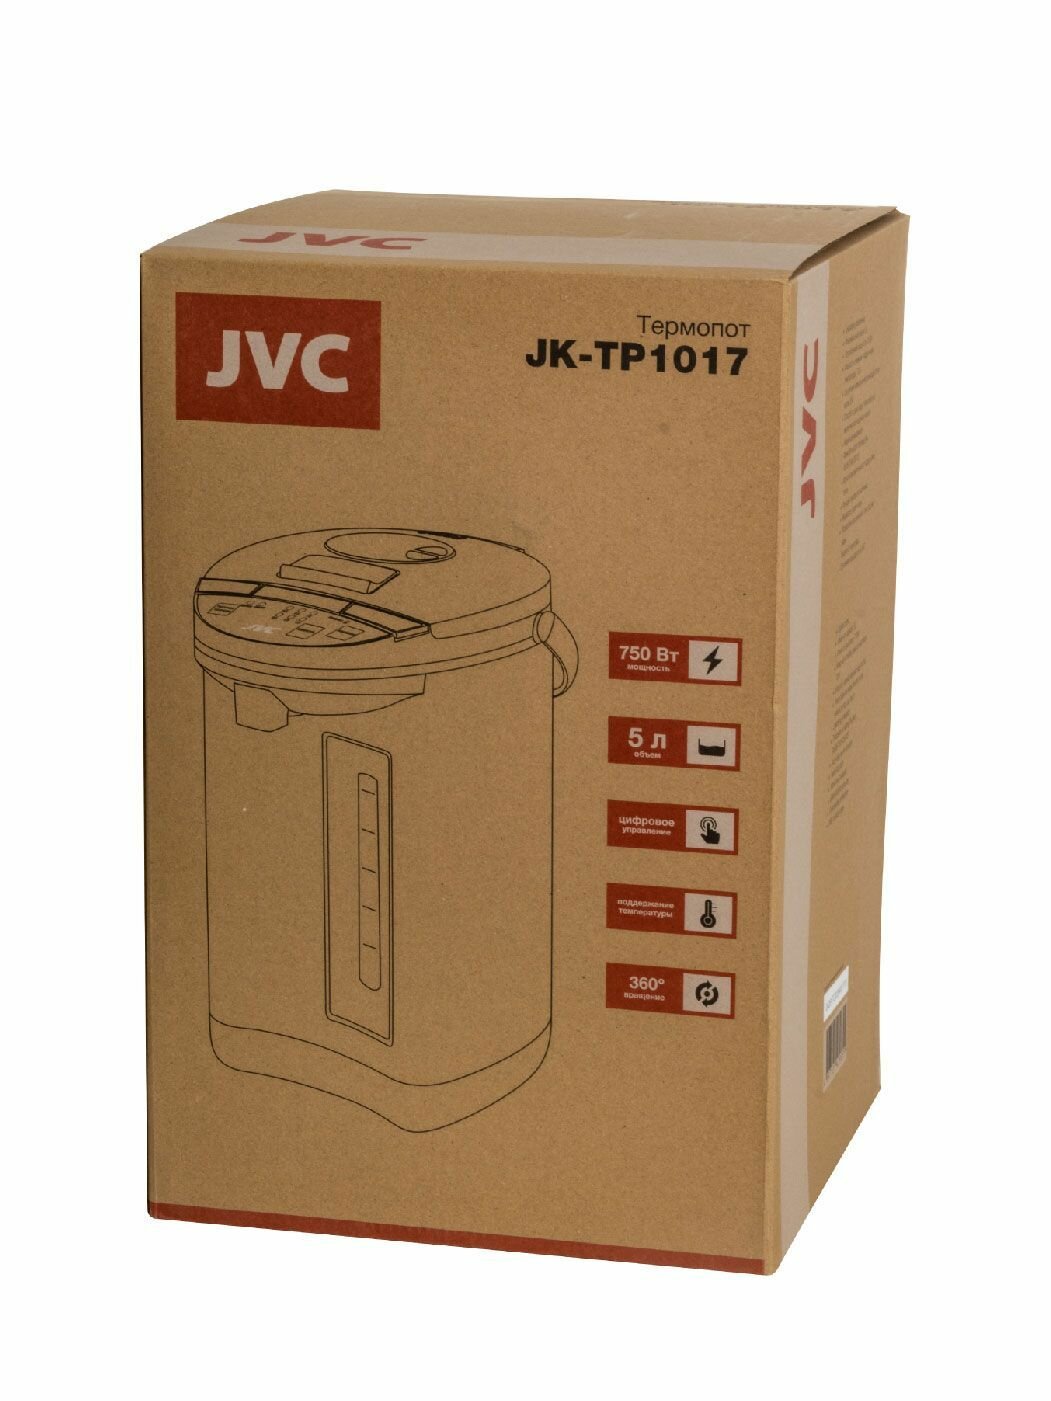 Термопот JVC объем 5 л, функция повторного кипячения, выбор и поддержание температуры 98/85/75/65/55/45 градусов, 3 способа подачи воды, 750 Вт - фотография № 13